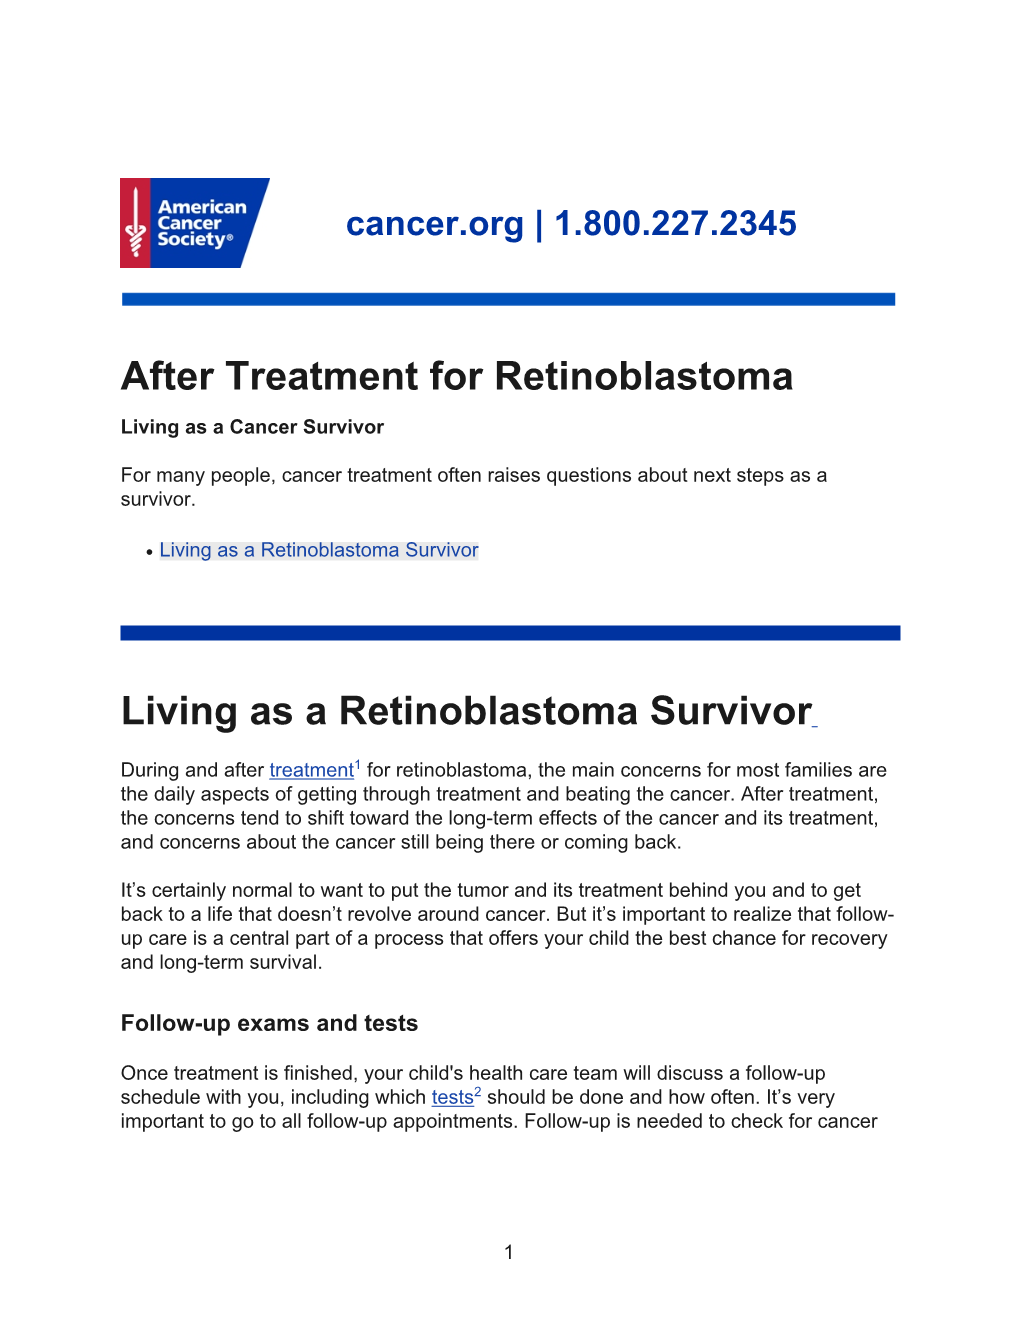 After Treatment for Retinoblastoma Living As a Cancer Survivor